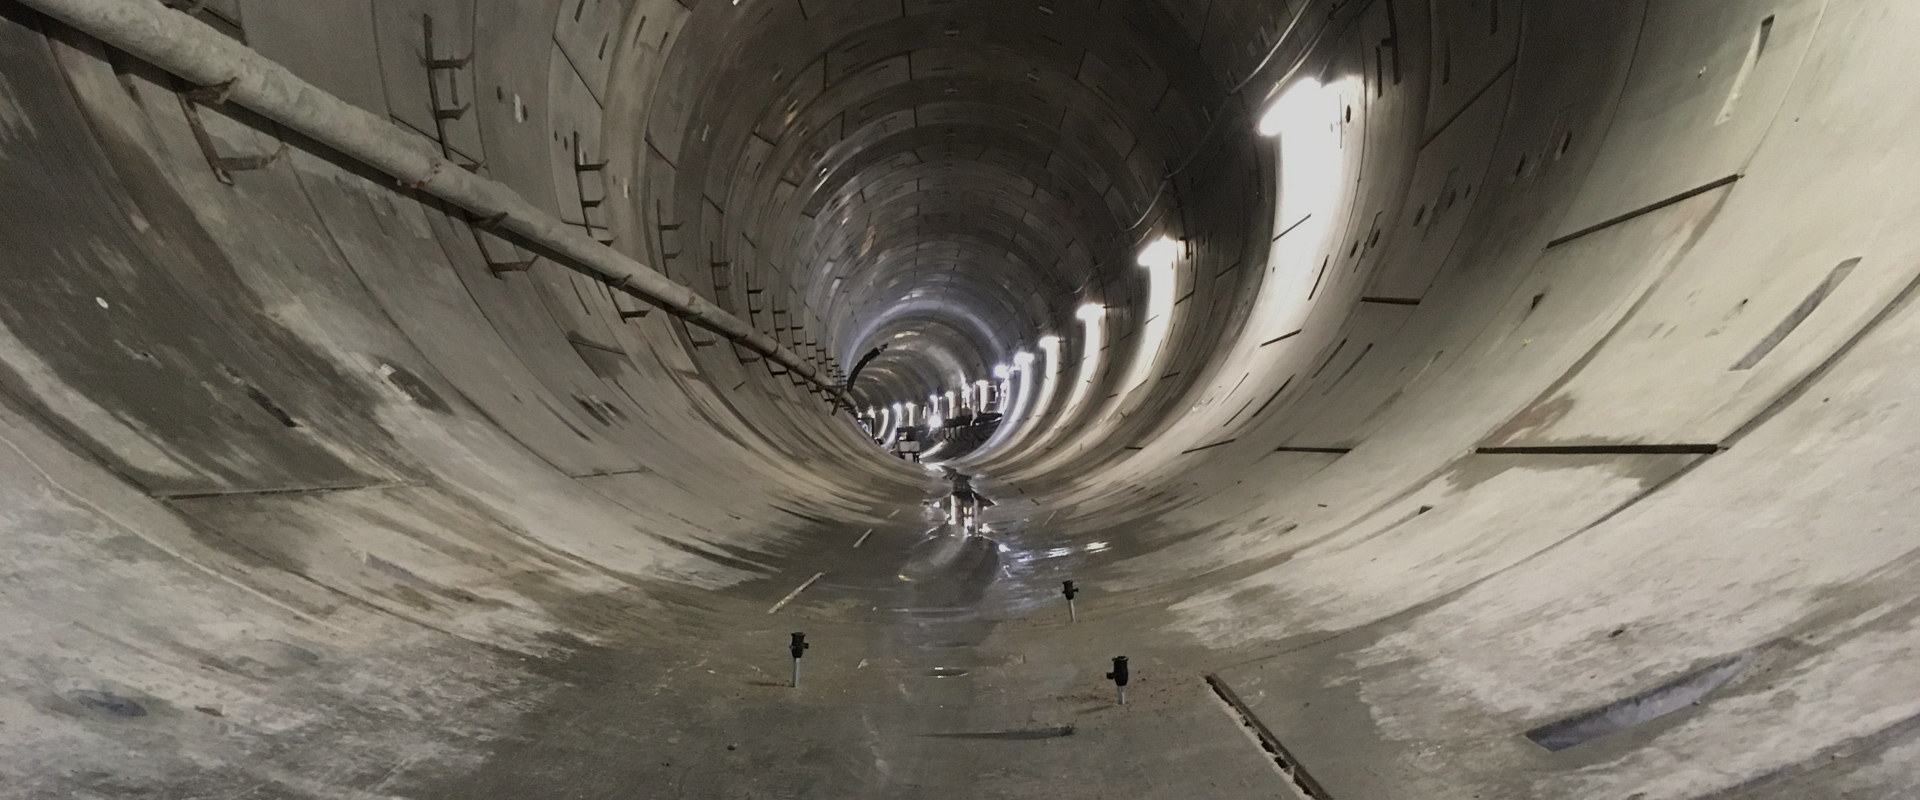 Projekt výstavby tunelu Sydhavn/M4 v Kodani